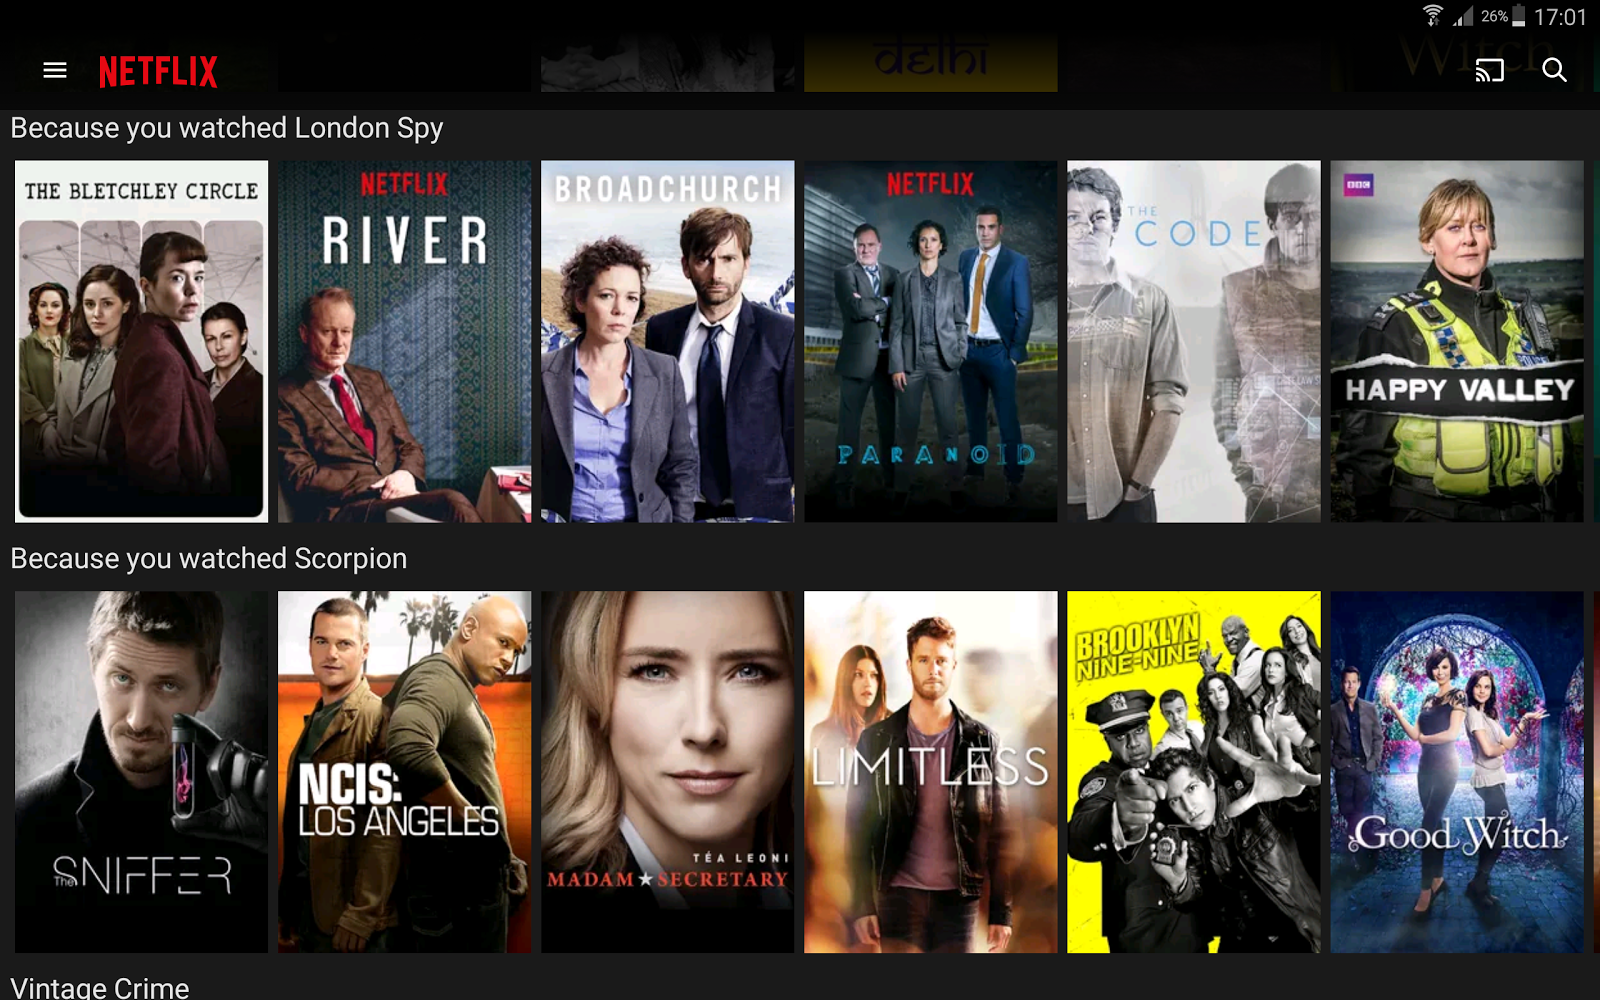 Netflix personalization